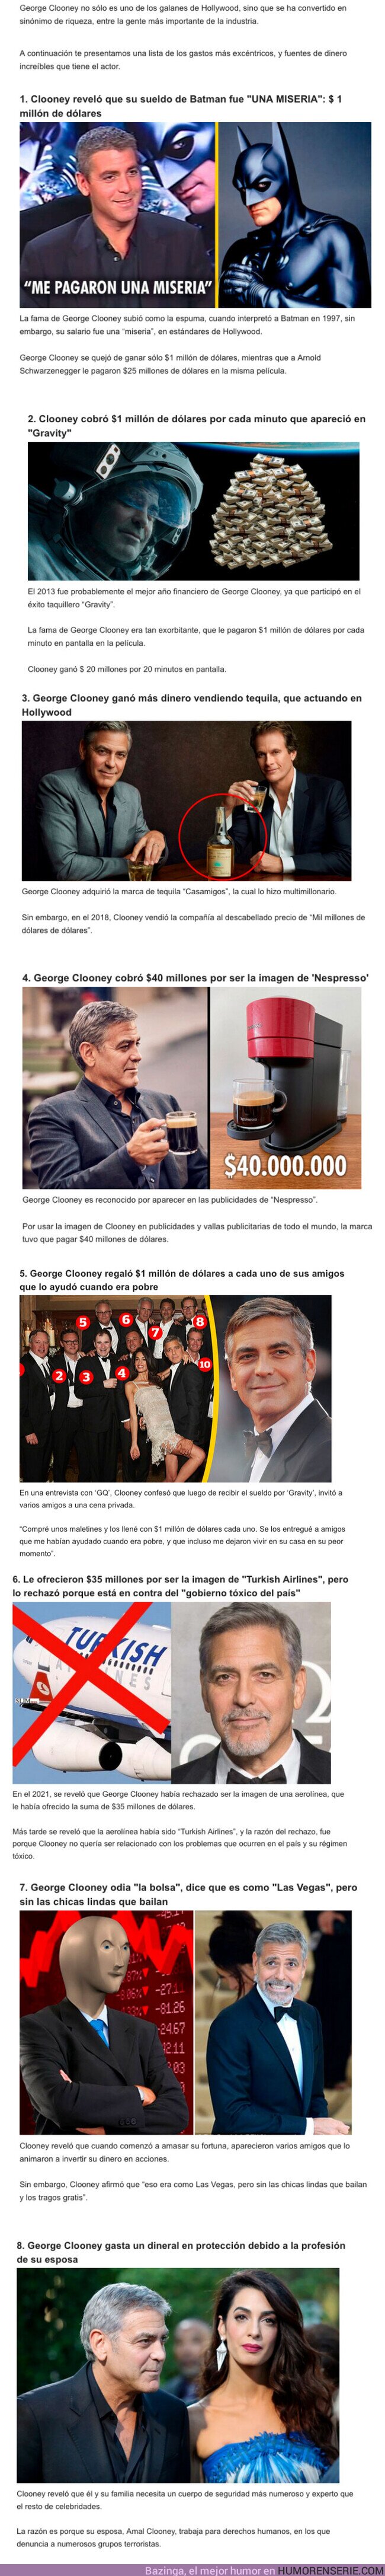 110730 - GALERÍA: 10 curiosidades sobre la “Millonaria Fortuna” de George Clooney y sus excéntricas compras